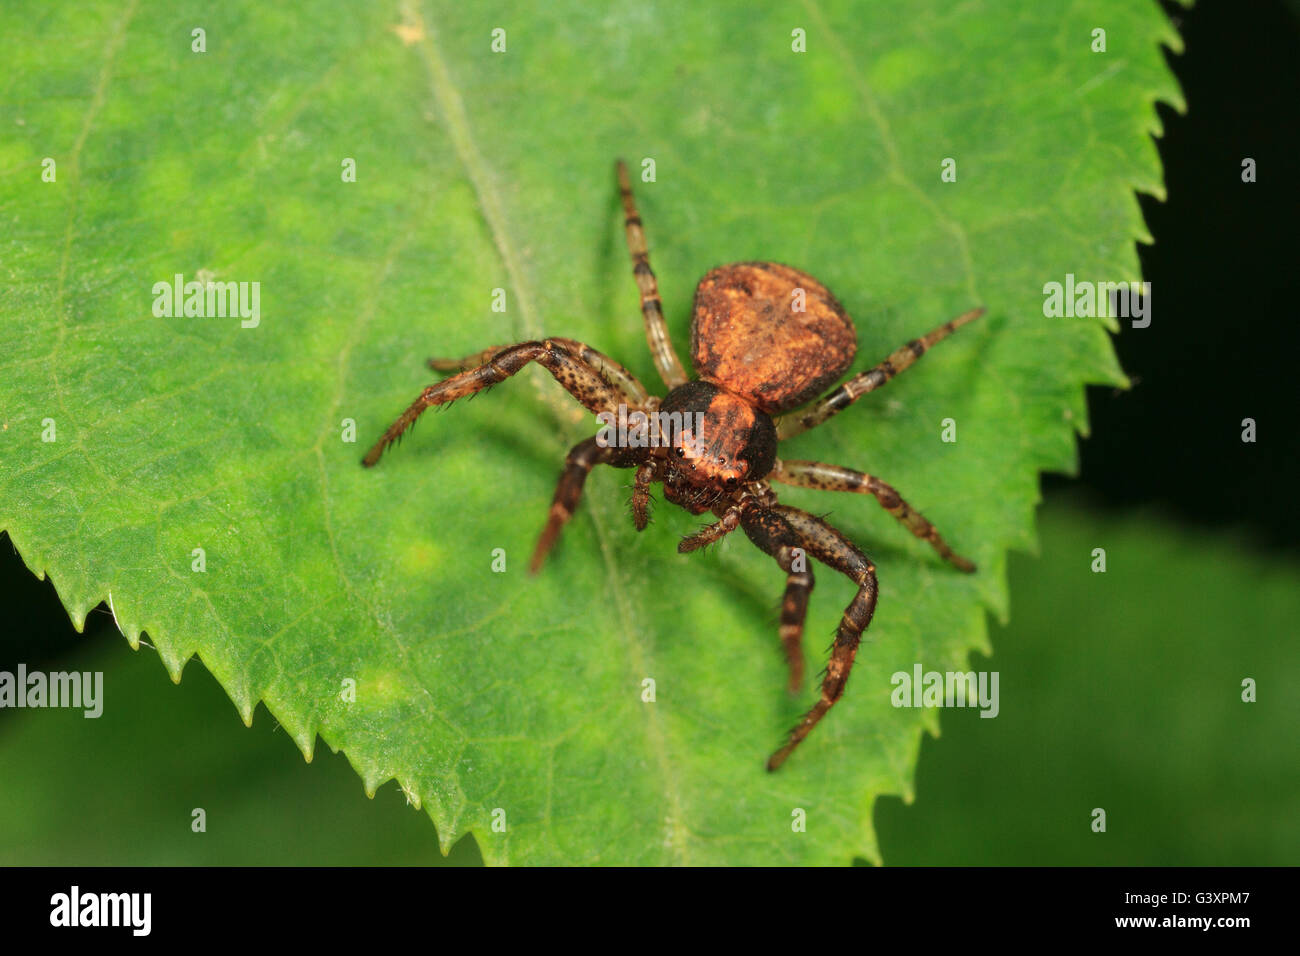 Crabe araignée (Xysticus sol sp.) sur la feuille. Banque D'Images